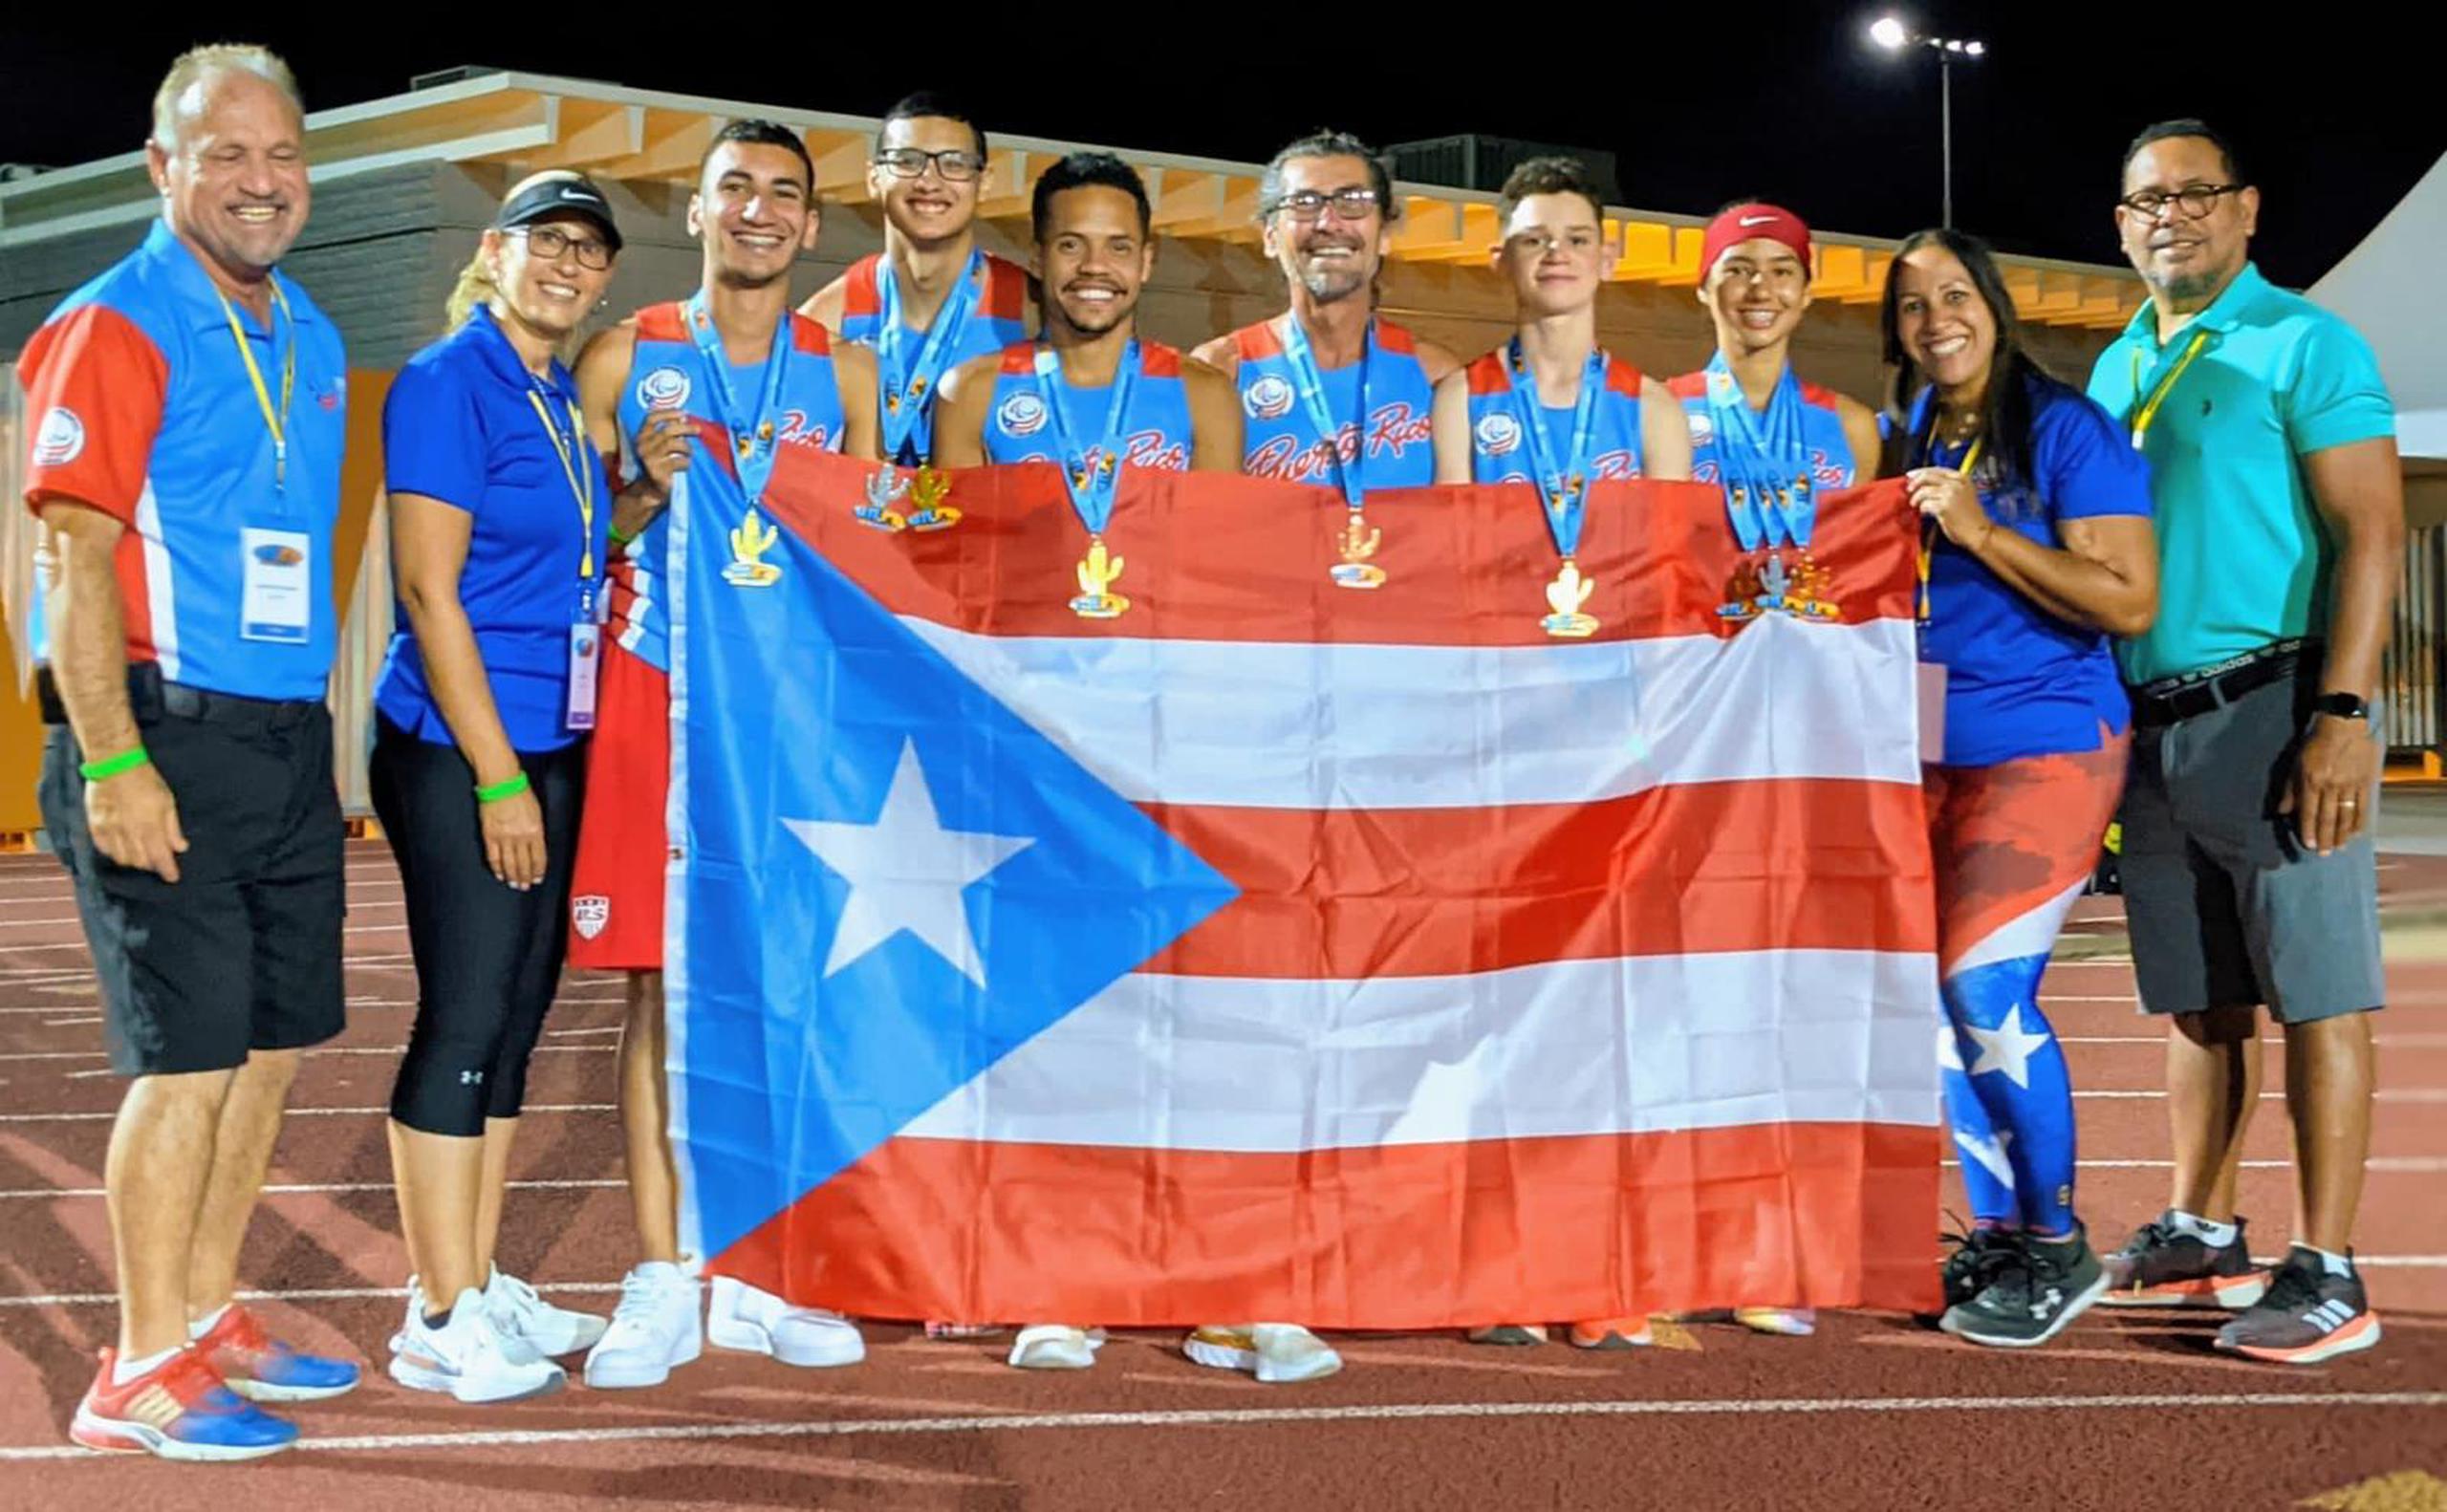 Puerto Rico sumó nueve medallas, cuatro de ellas de oro.